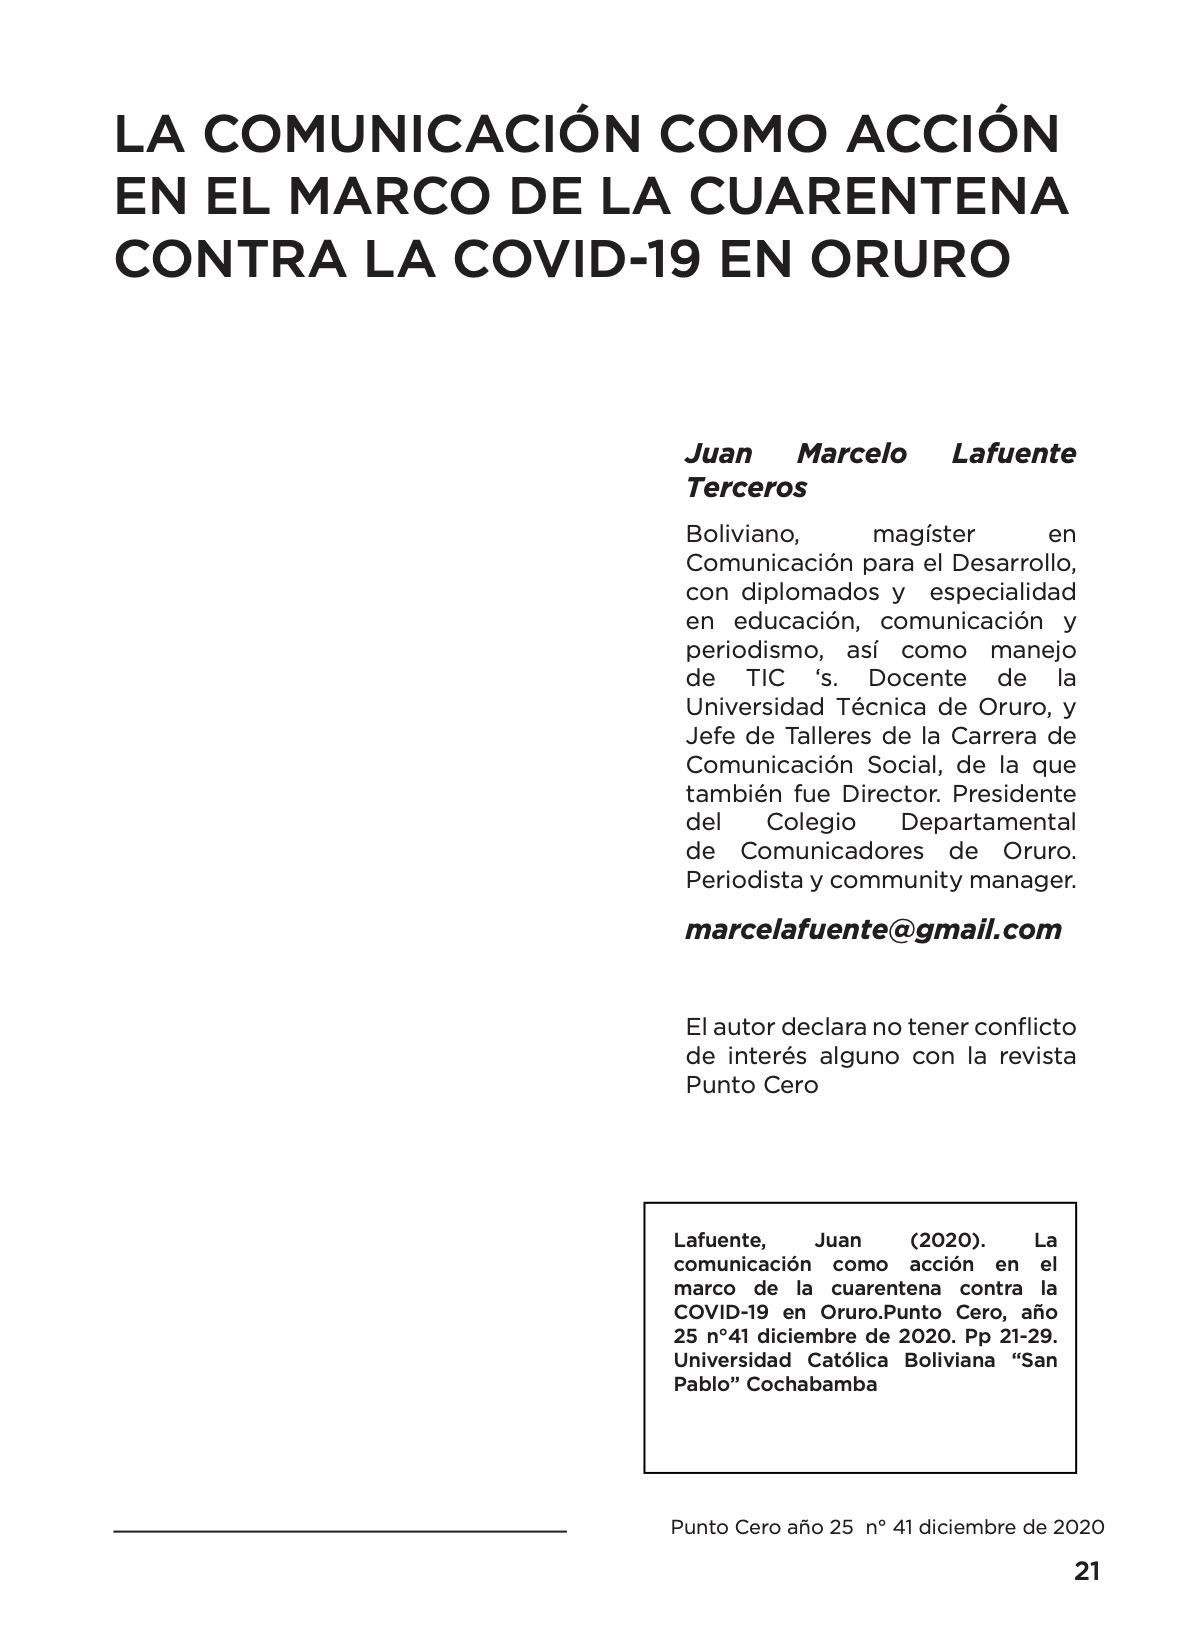 La Comunicación como acción en el marco de la cuarentena contra la Covid-19 en Oruro